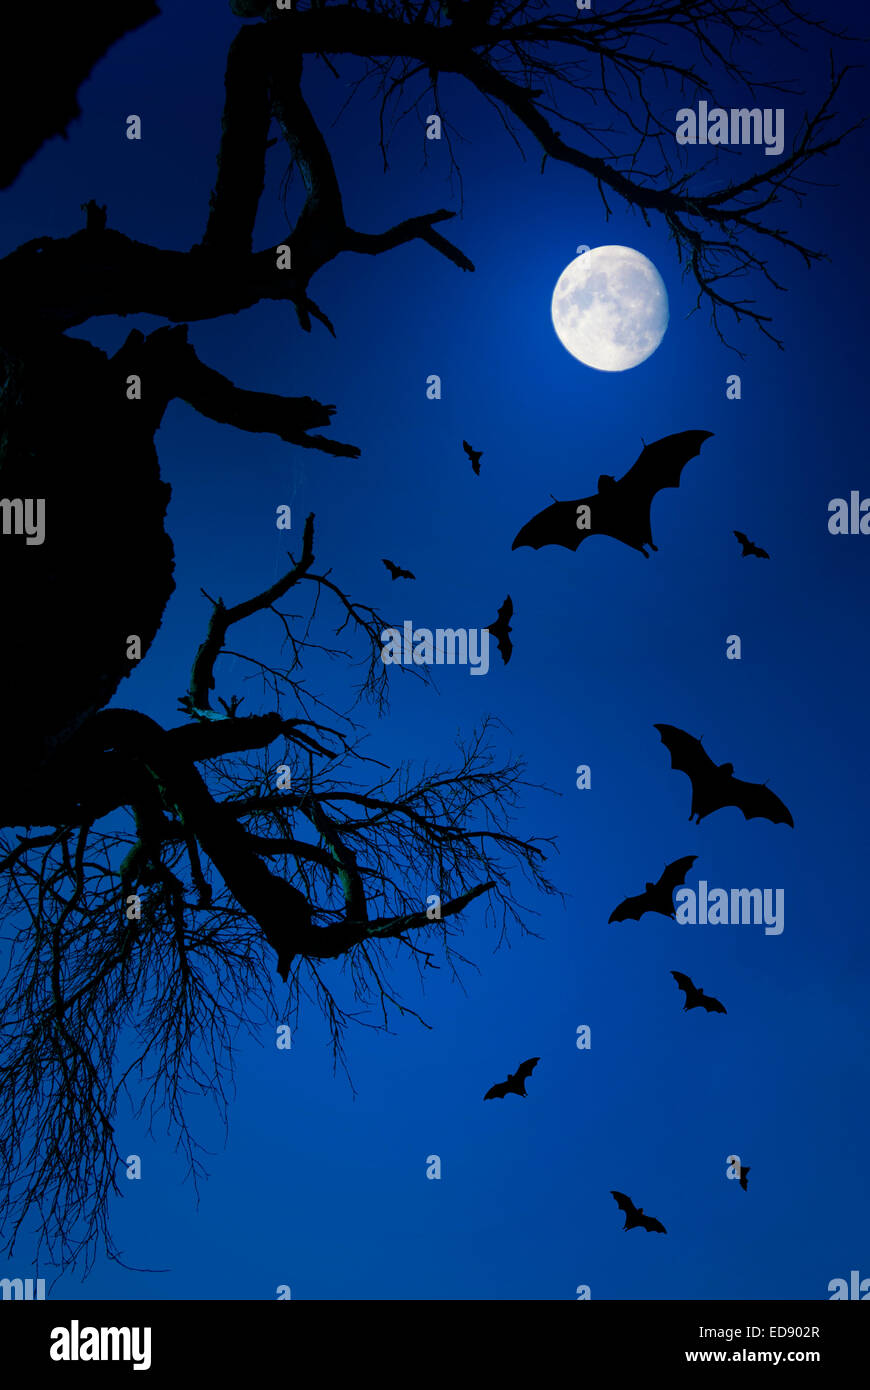 dramatische Nachtszene mit toter Baum, rising Moon und fliegen Fledermäuse in der silhouette Stockfoto